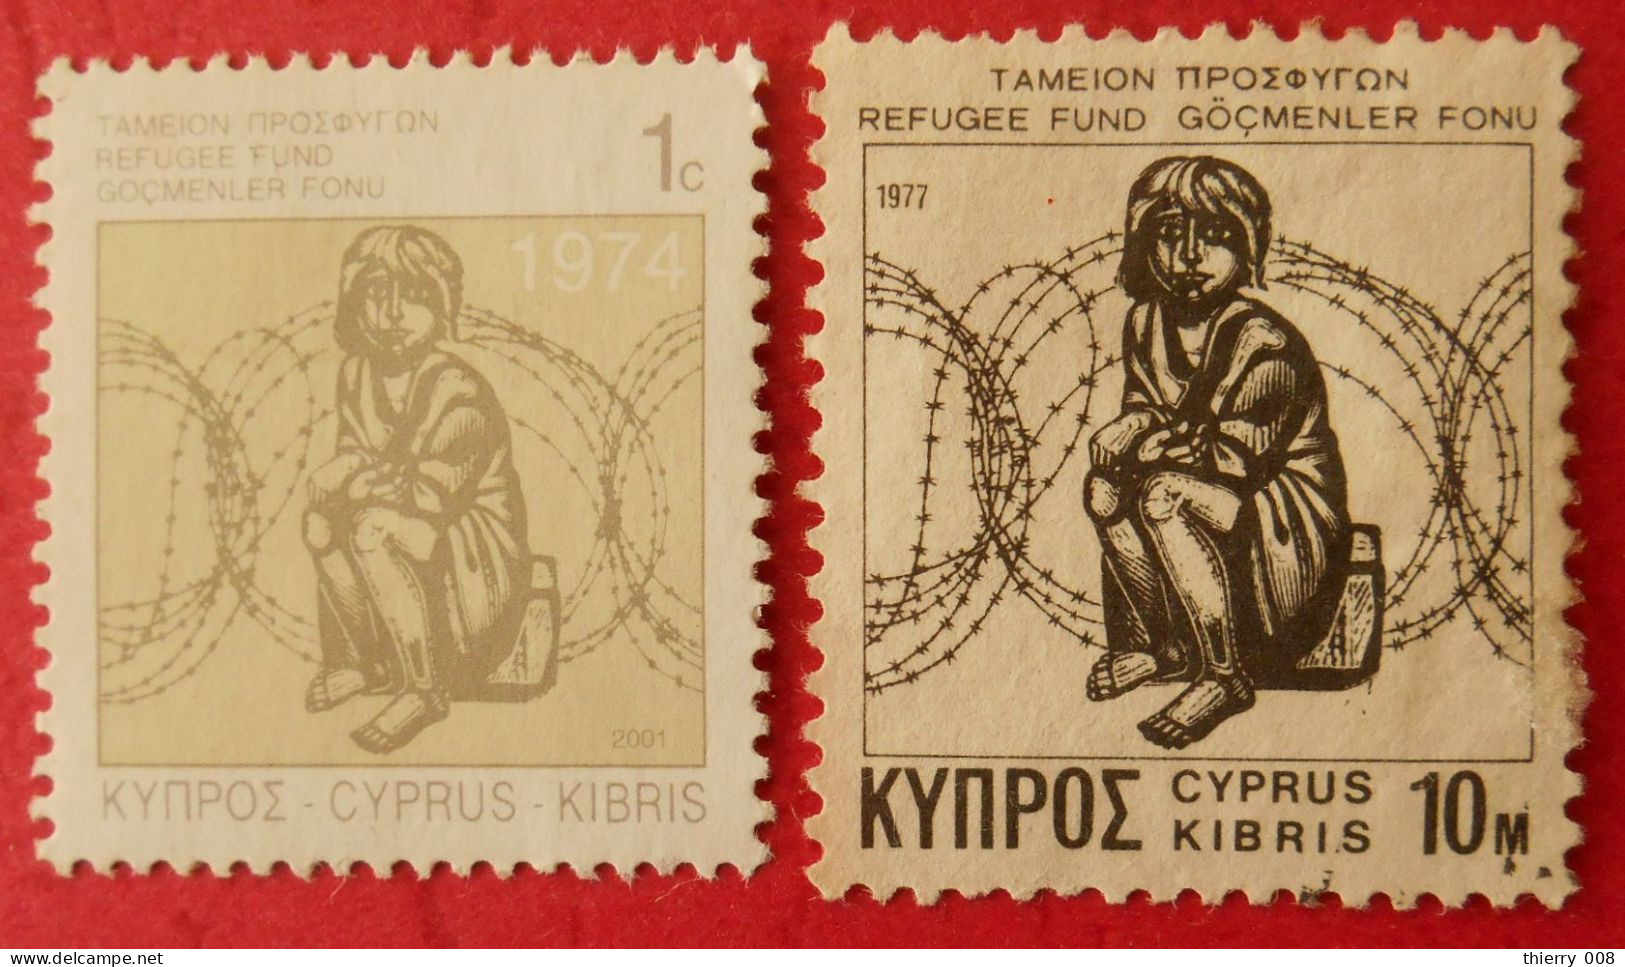 F94 Cyprus Kibris Chypre  Fond Pour Les Réfugiés - Refugees